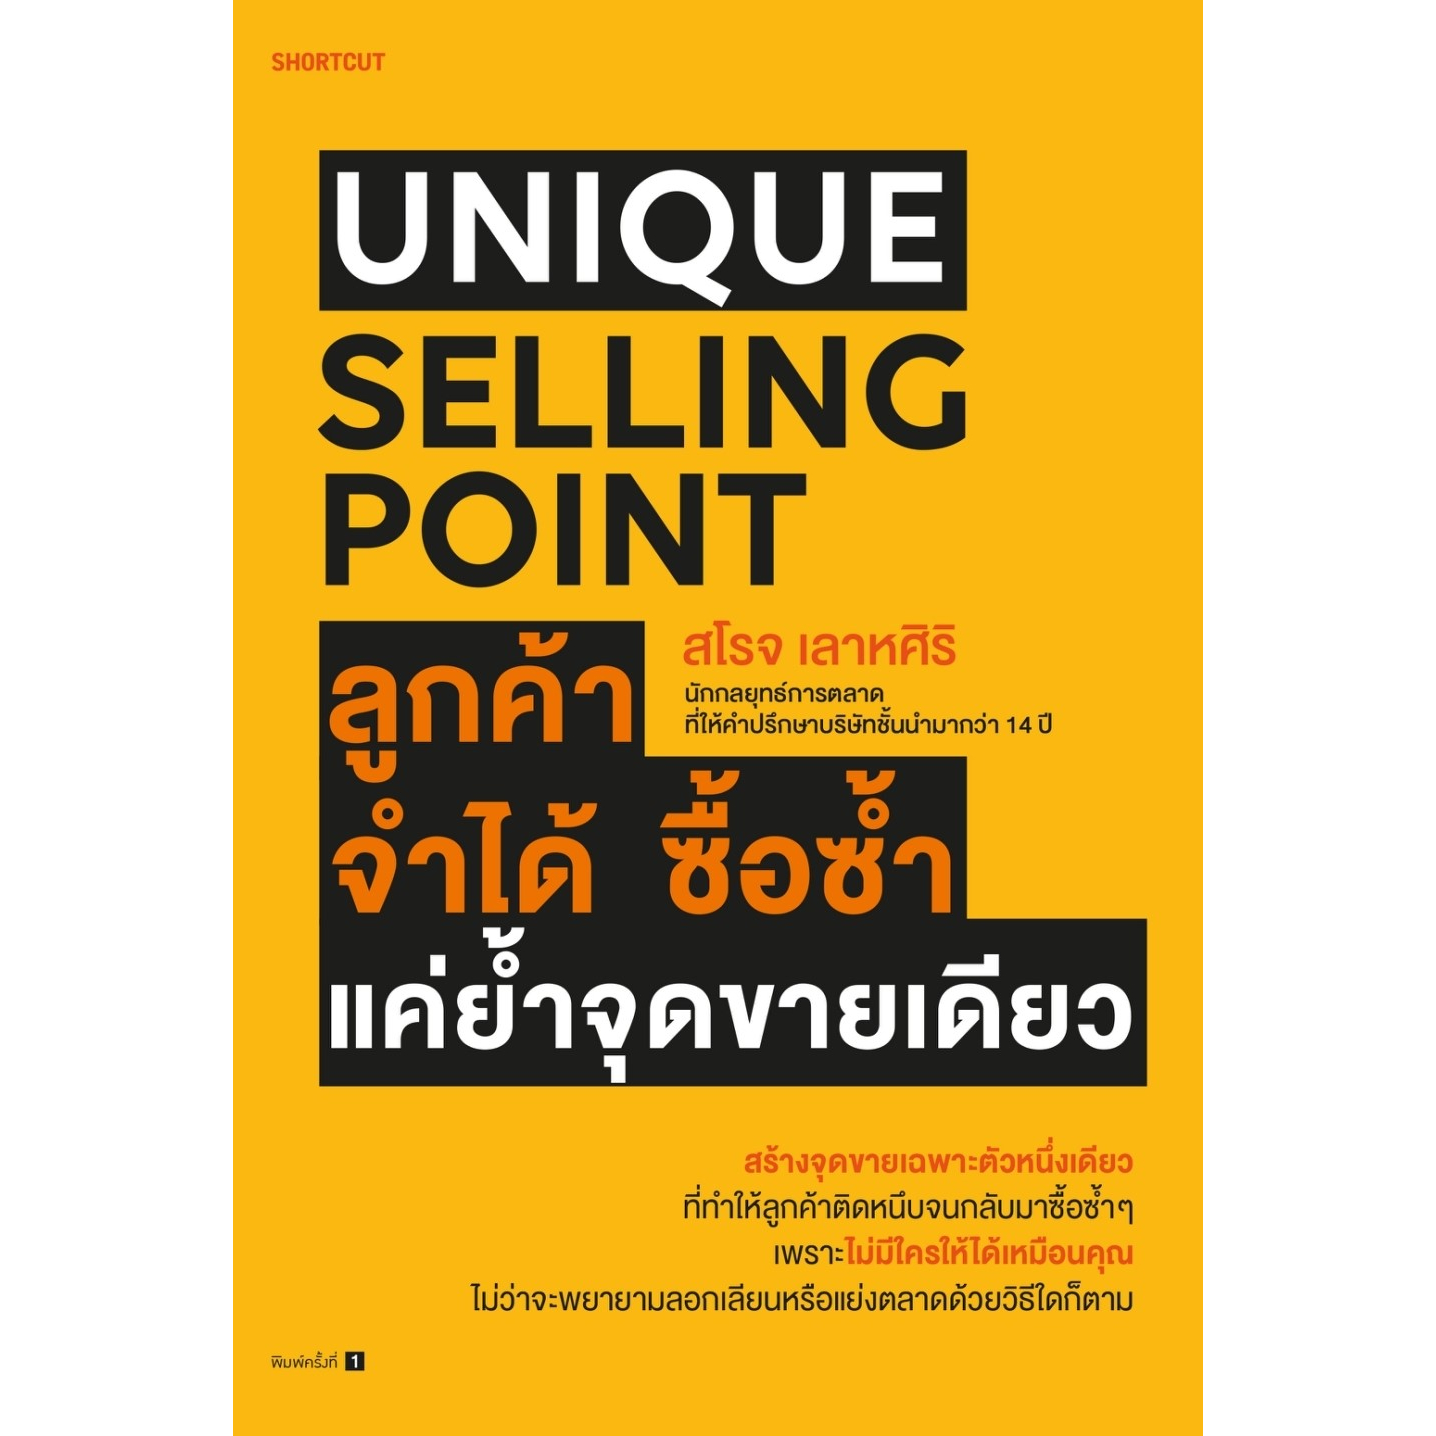 หนังสือ-unique-selling-point-ลูกค้าจำได้-ซื้อซํ้า-แค่ยํ้าจุดขายเดียว-สโรจ-เลาหศิริ-สำนักพิมพ์-shortcut